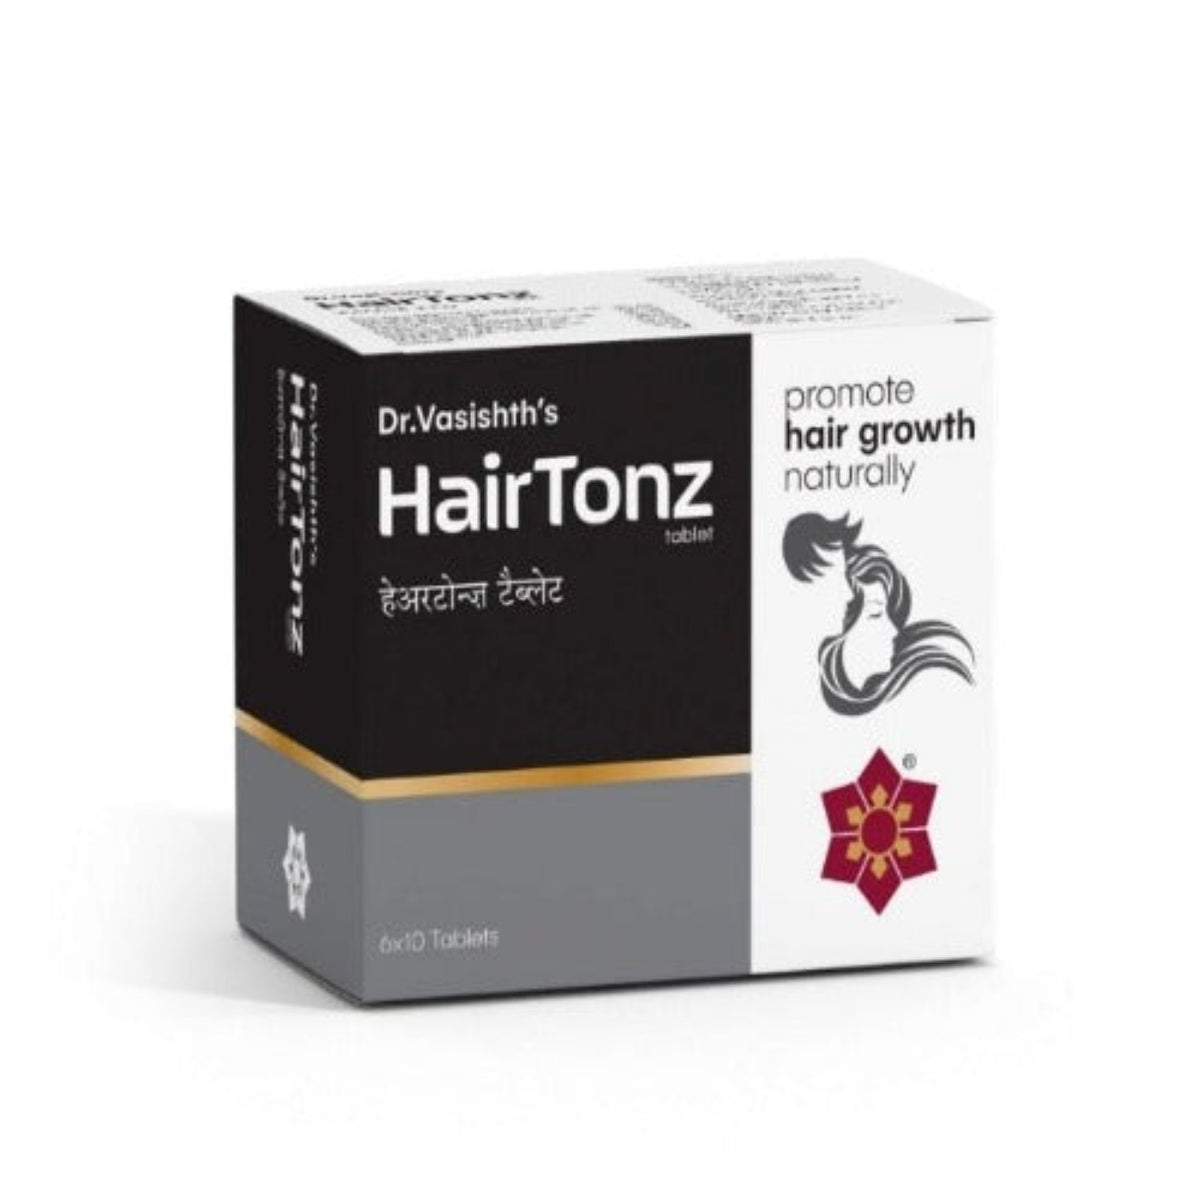 Аюрведический препарат для здоровья волос Hairtonz Dr.Vasishth's, 6 х 10 таблеток